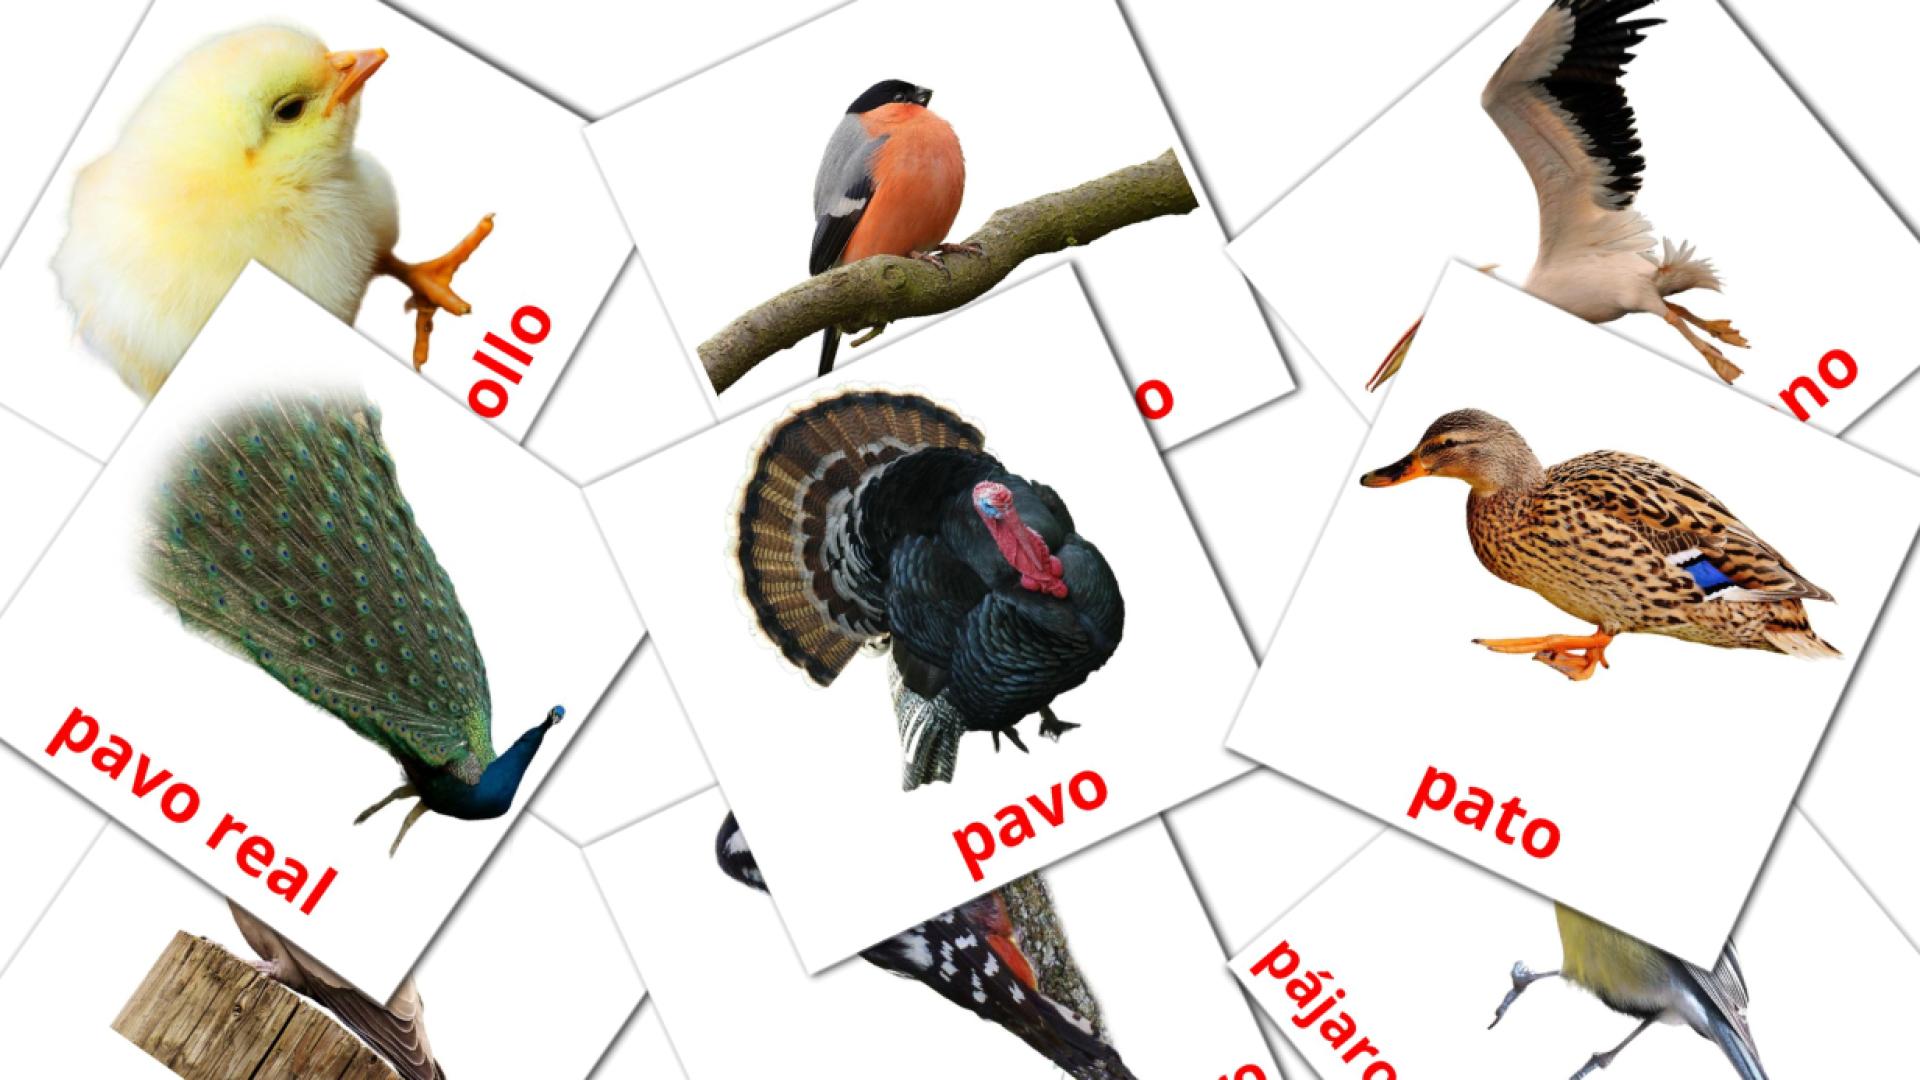 macedonio tarjetas de vocabulario en Aves